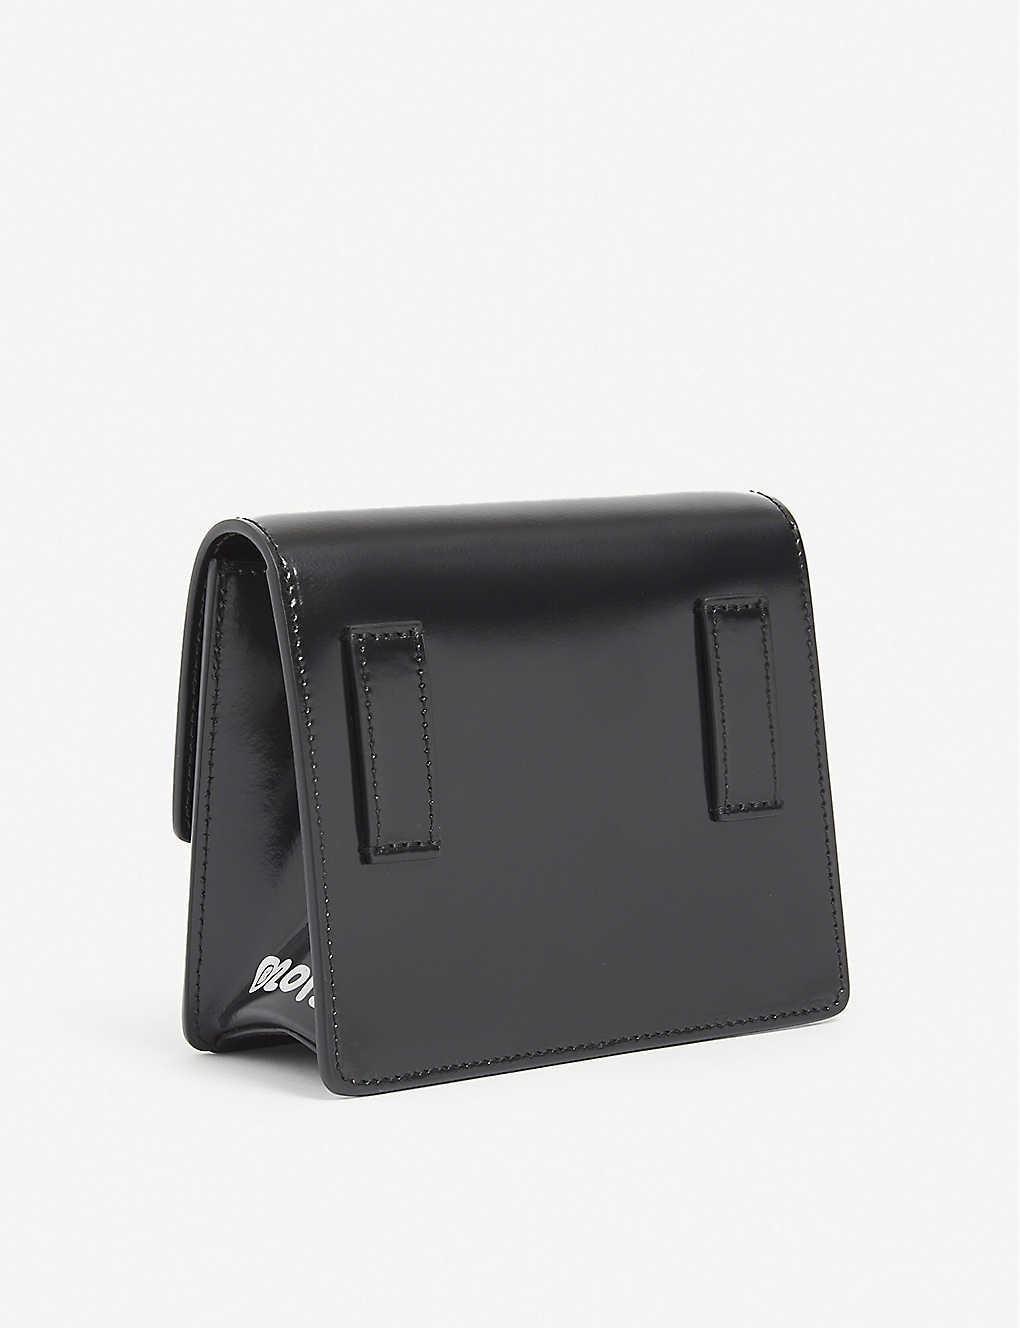 Off-White c/o Virgil Abloh Jitney 0.7 Rent Money Leather Cross-body Bag in  Black